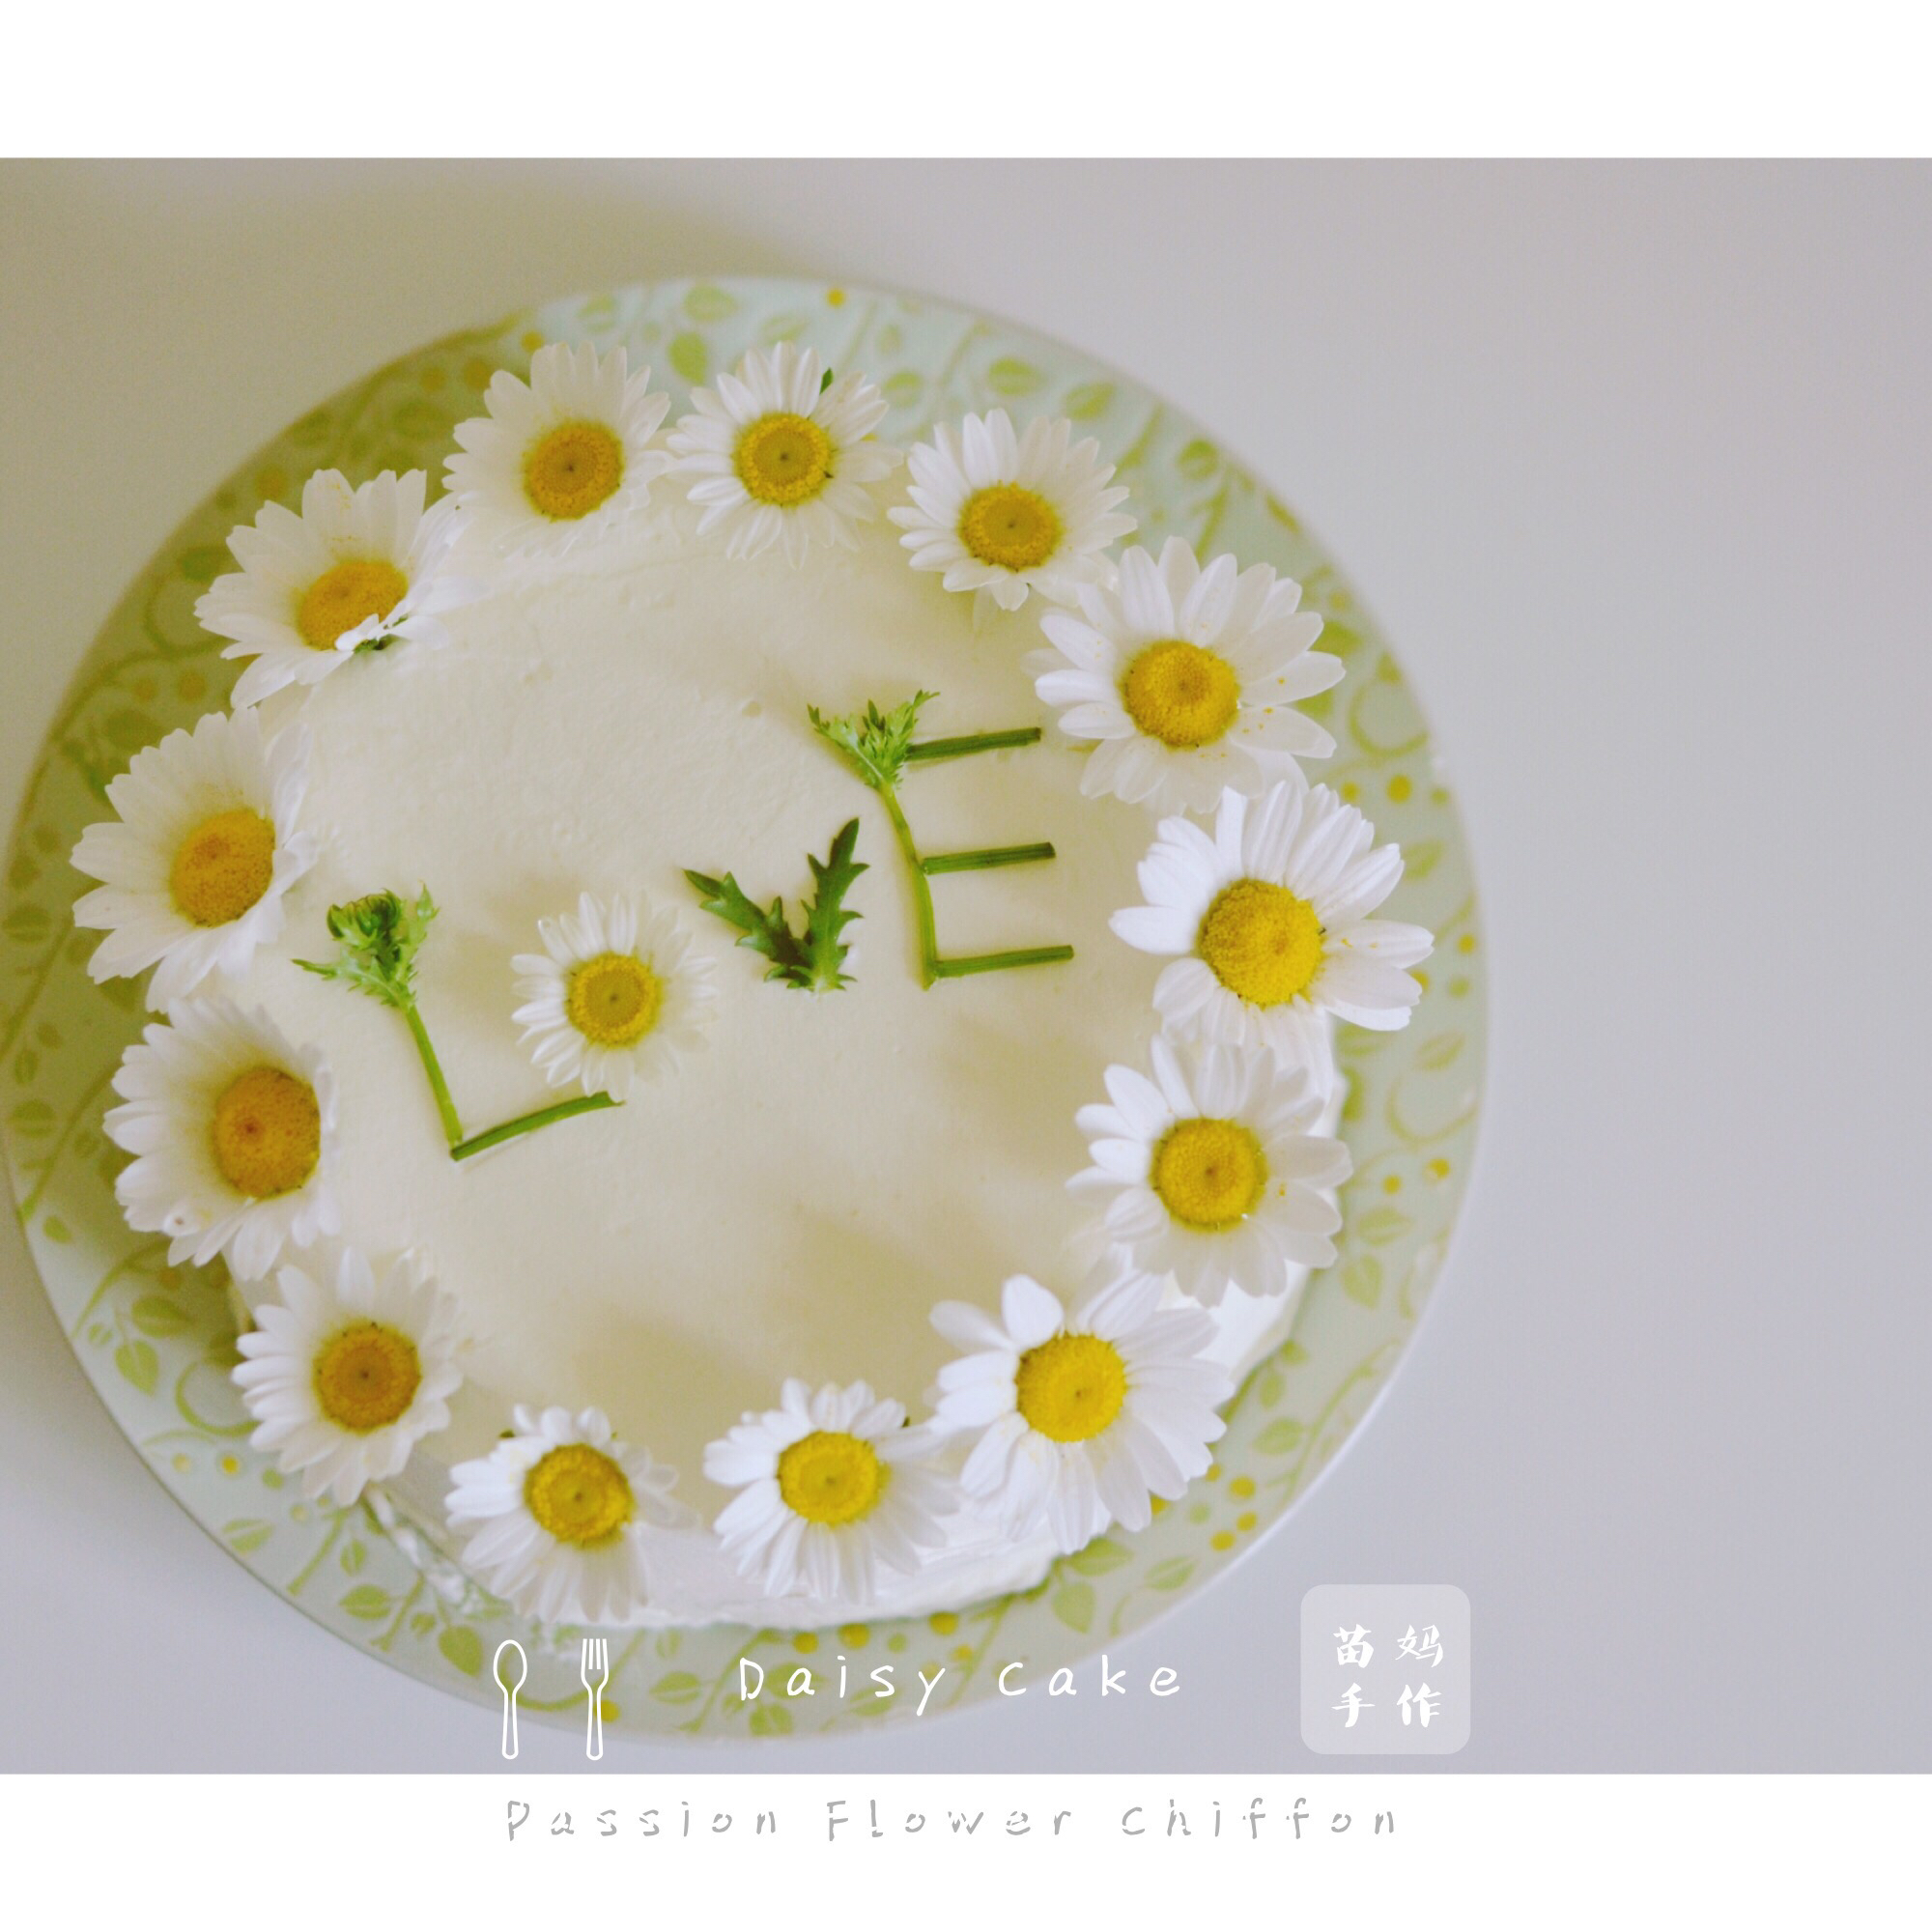 Daisy Cake （Passion Flower Chiffon）